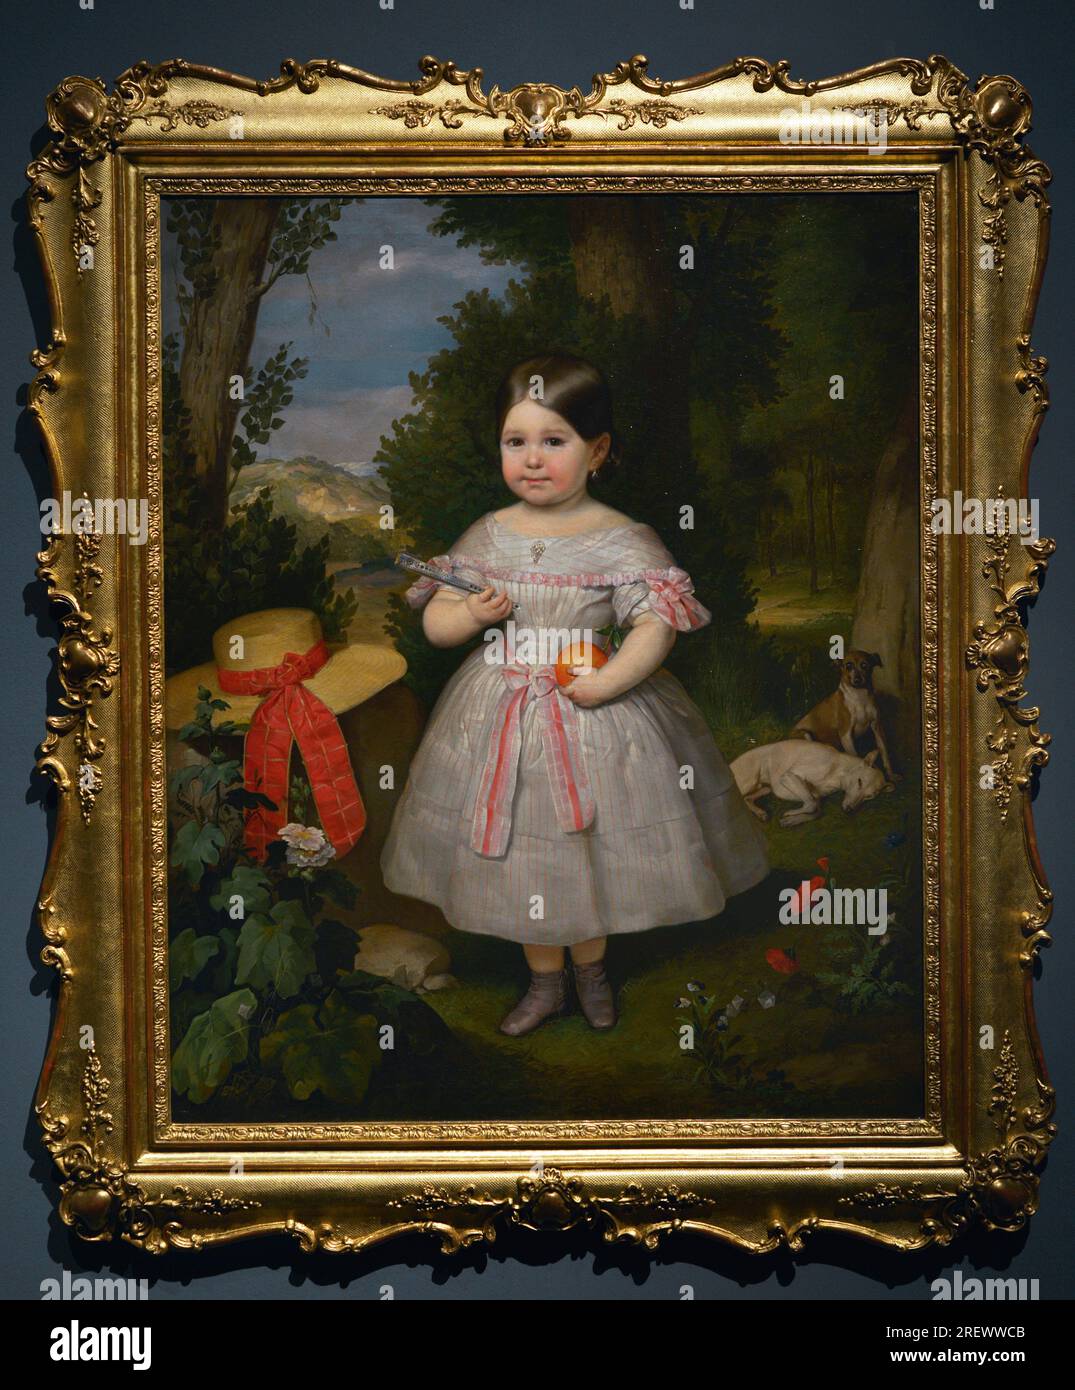 Carlos Luis de Ribera y Fieve (1815-1891). Spanischer Maler. Junge Frau in einer Landschaft, 1847. Öl auf Leinwand, 116 x 95 cm. Prado-Museum. Madrid. Spanien. Stockfoto